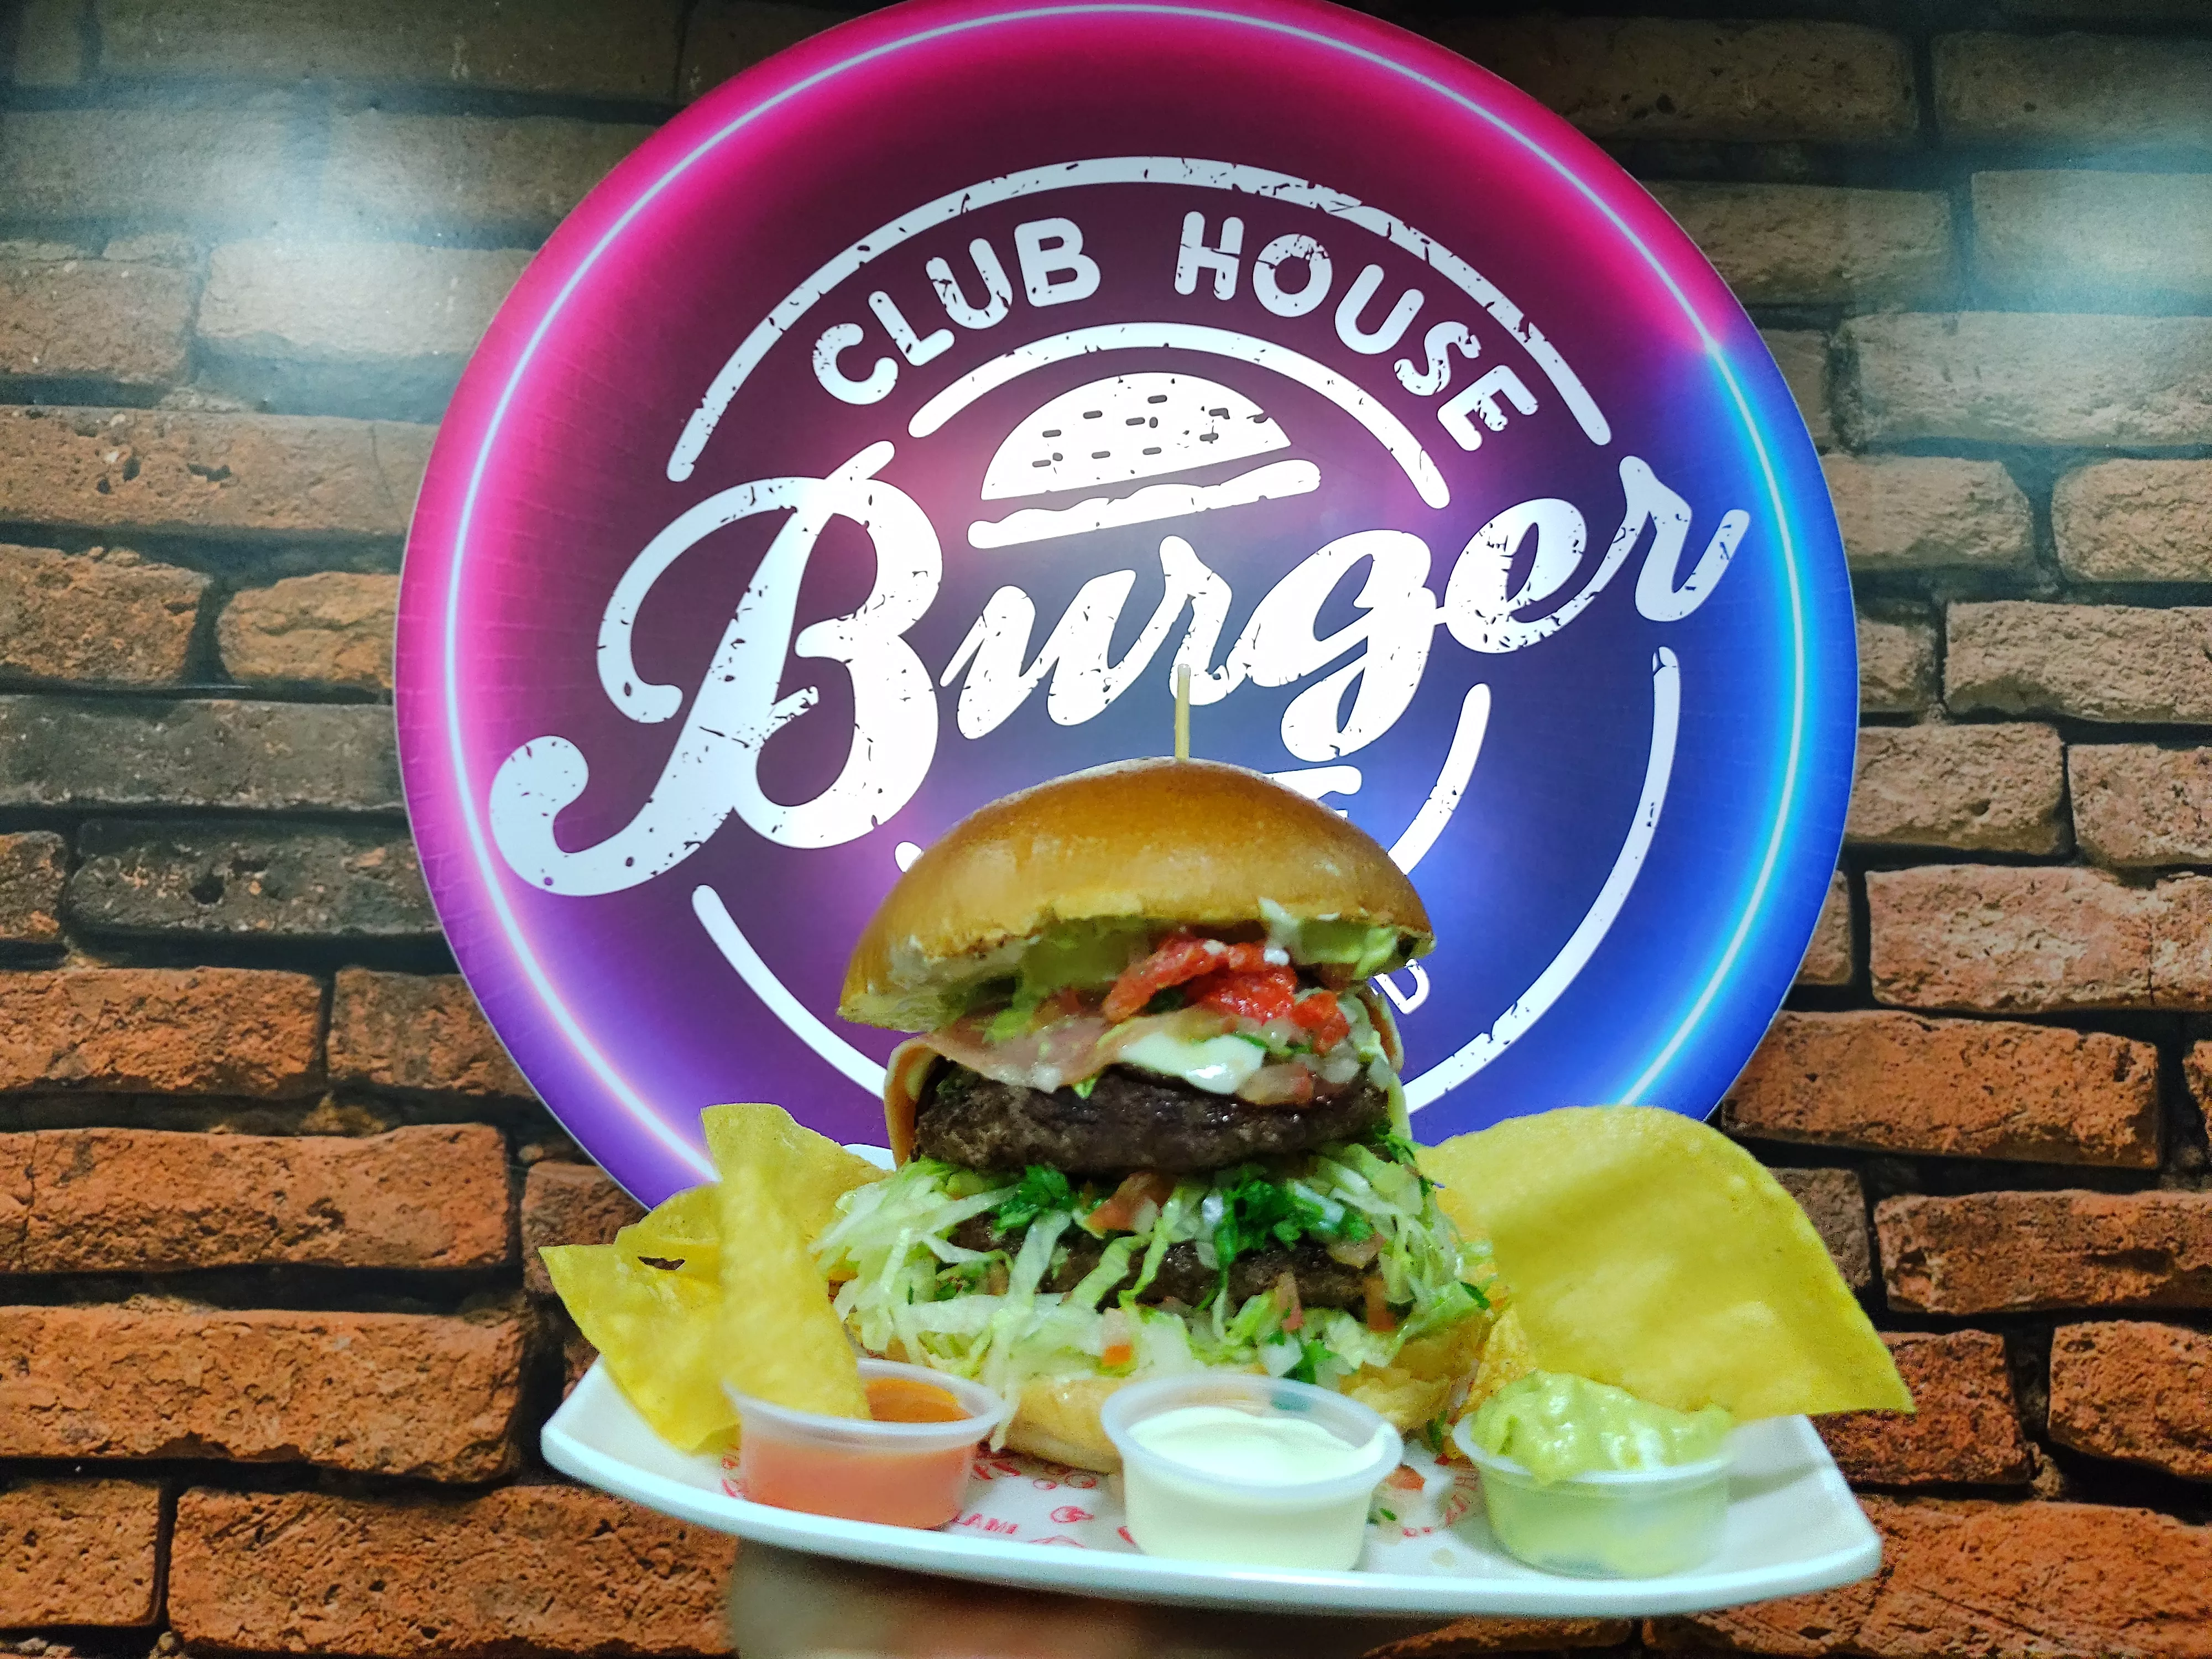 Club house burger